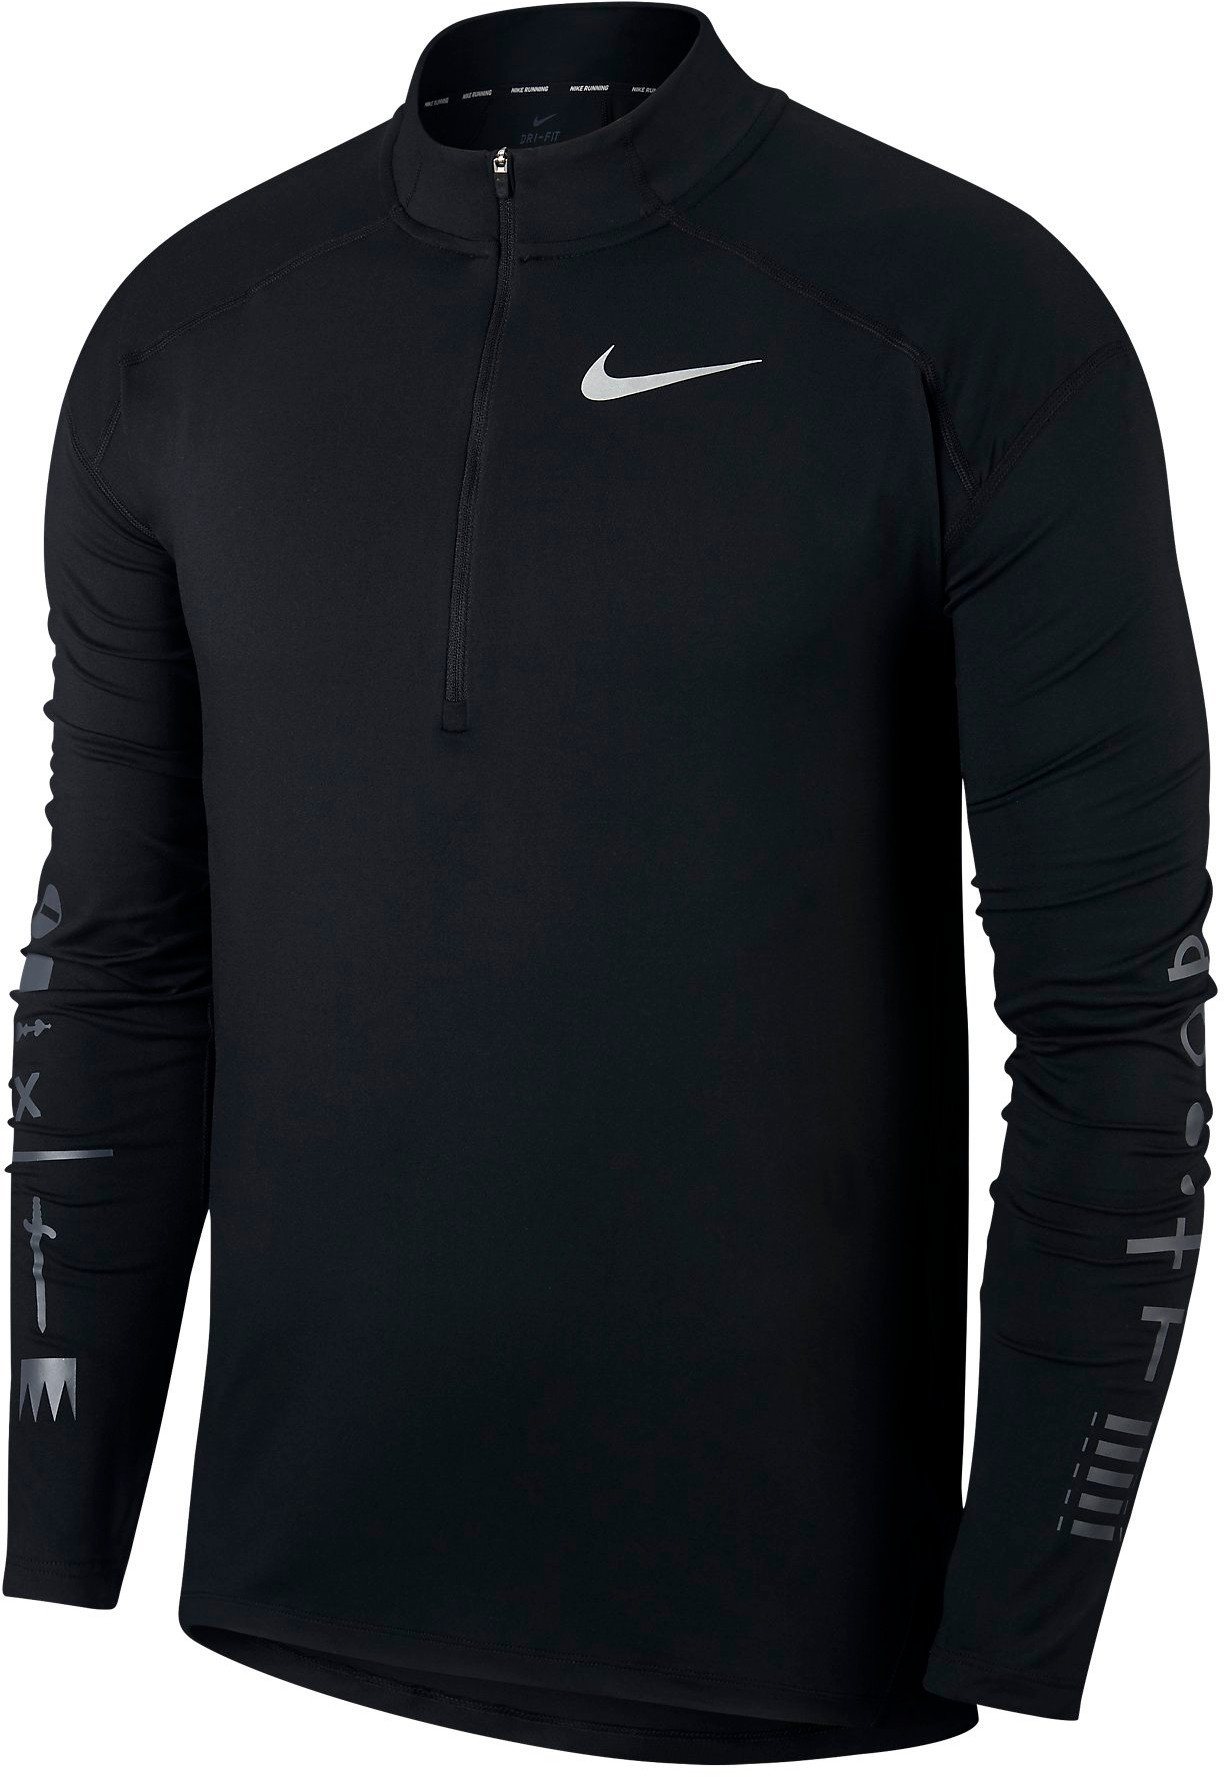 Pánské běžecké tričko s dlouhým rukávem Nike Dry Element London 2018